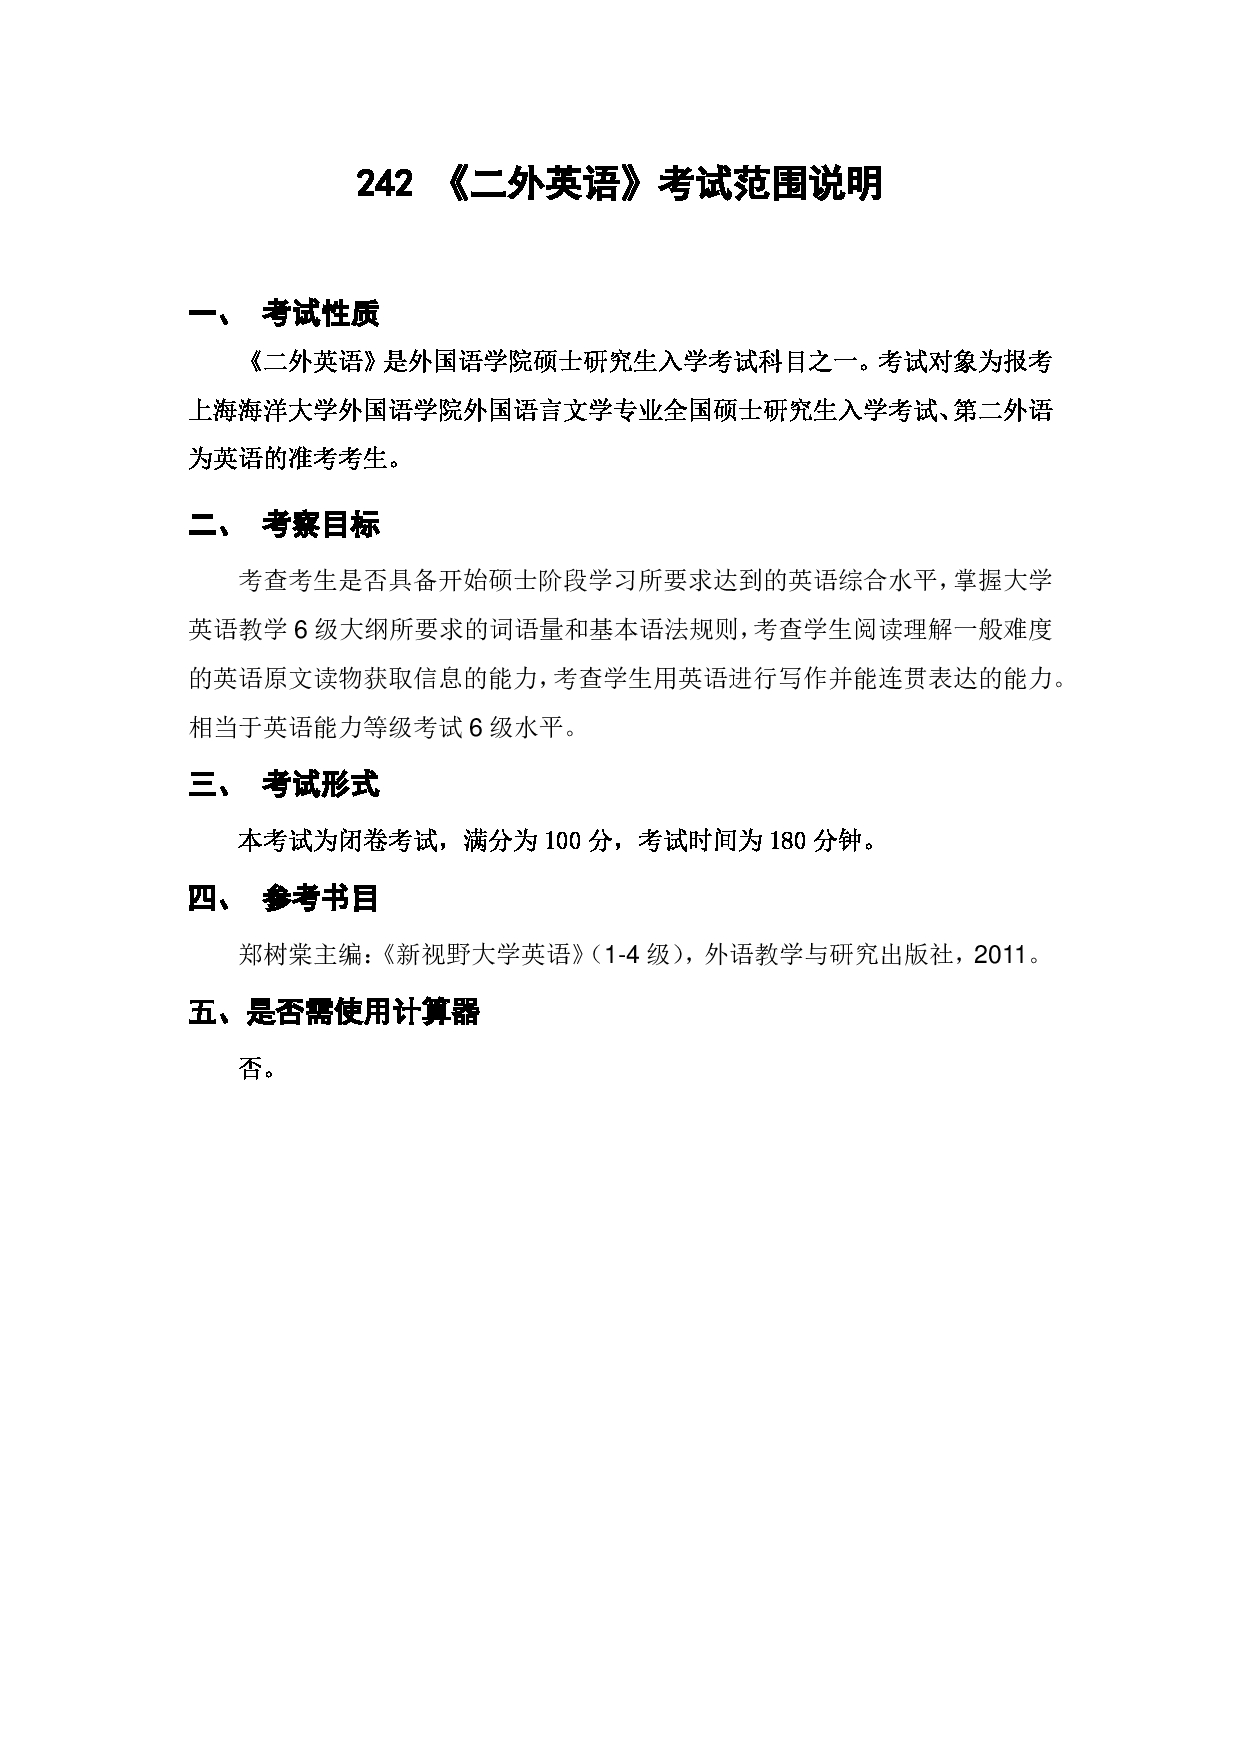 上海海洋大学2023年考研自命题科目 242《二外英语》 考试范围第1页